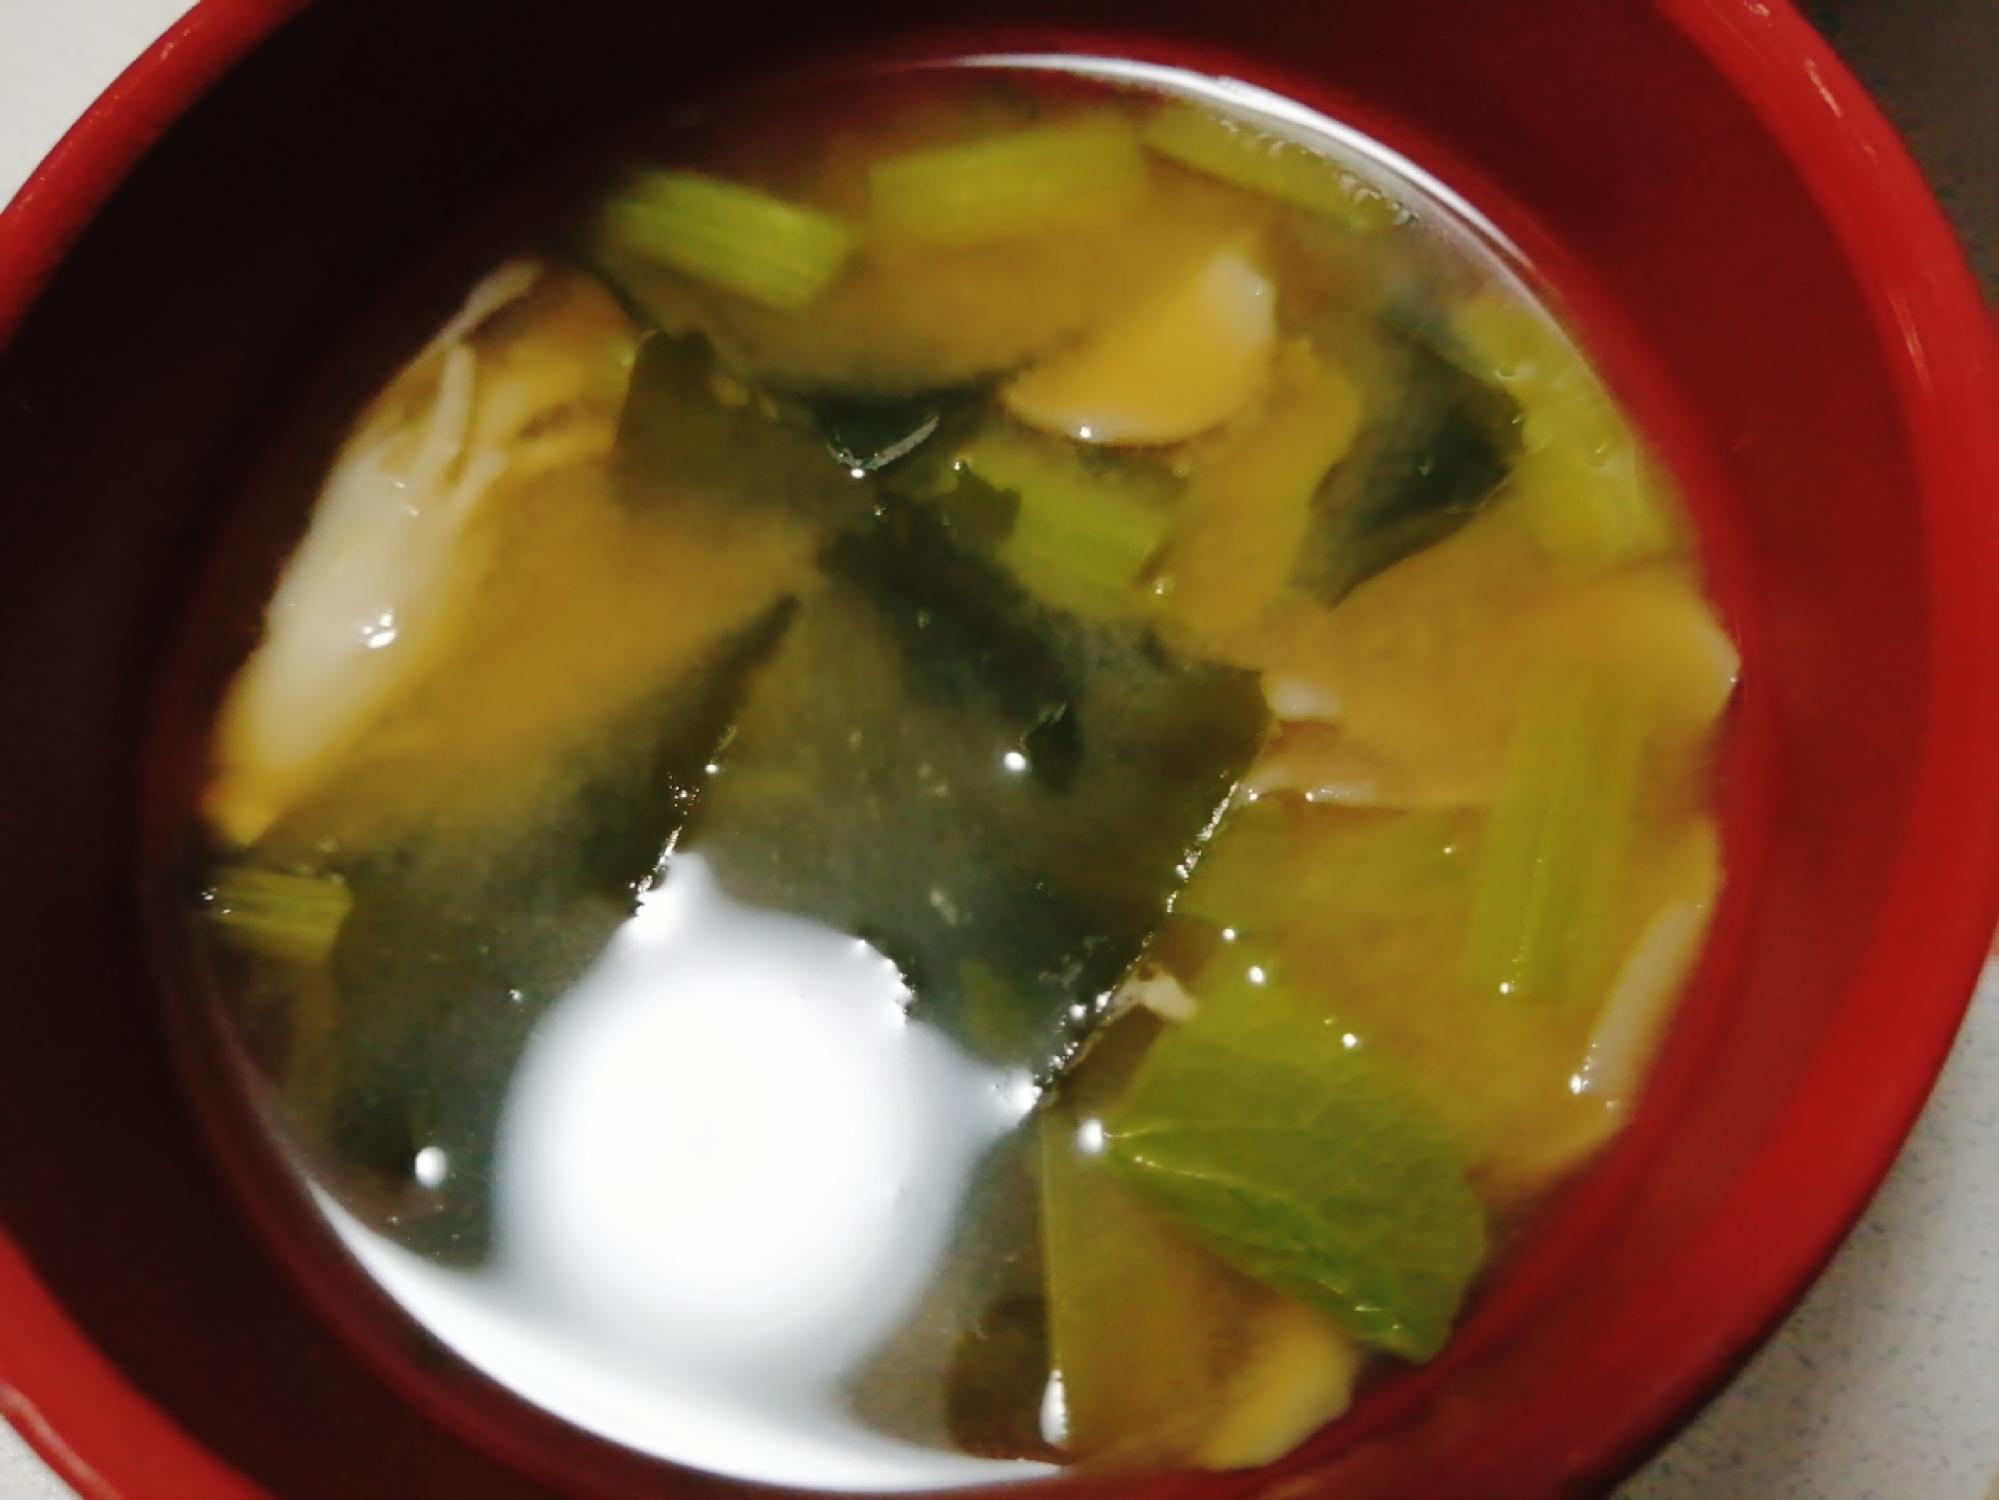 マイタケ小松菜ワカメの味噌汁